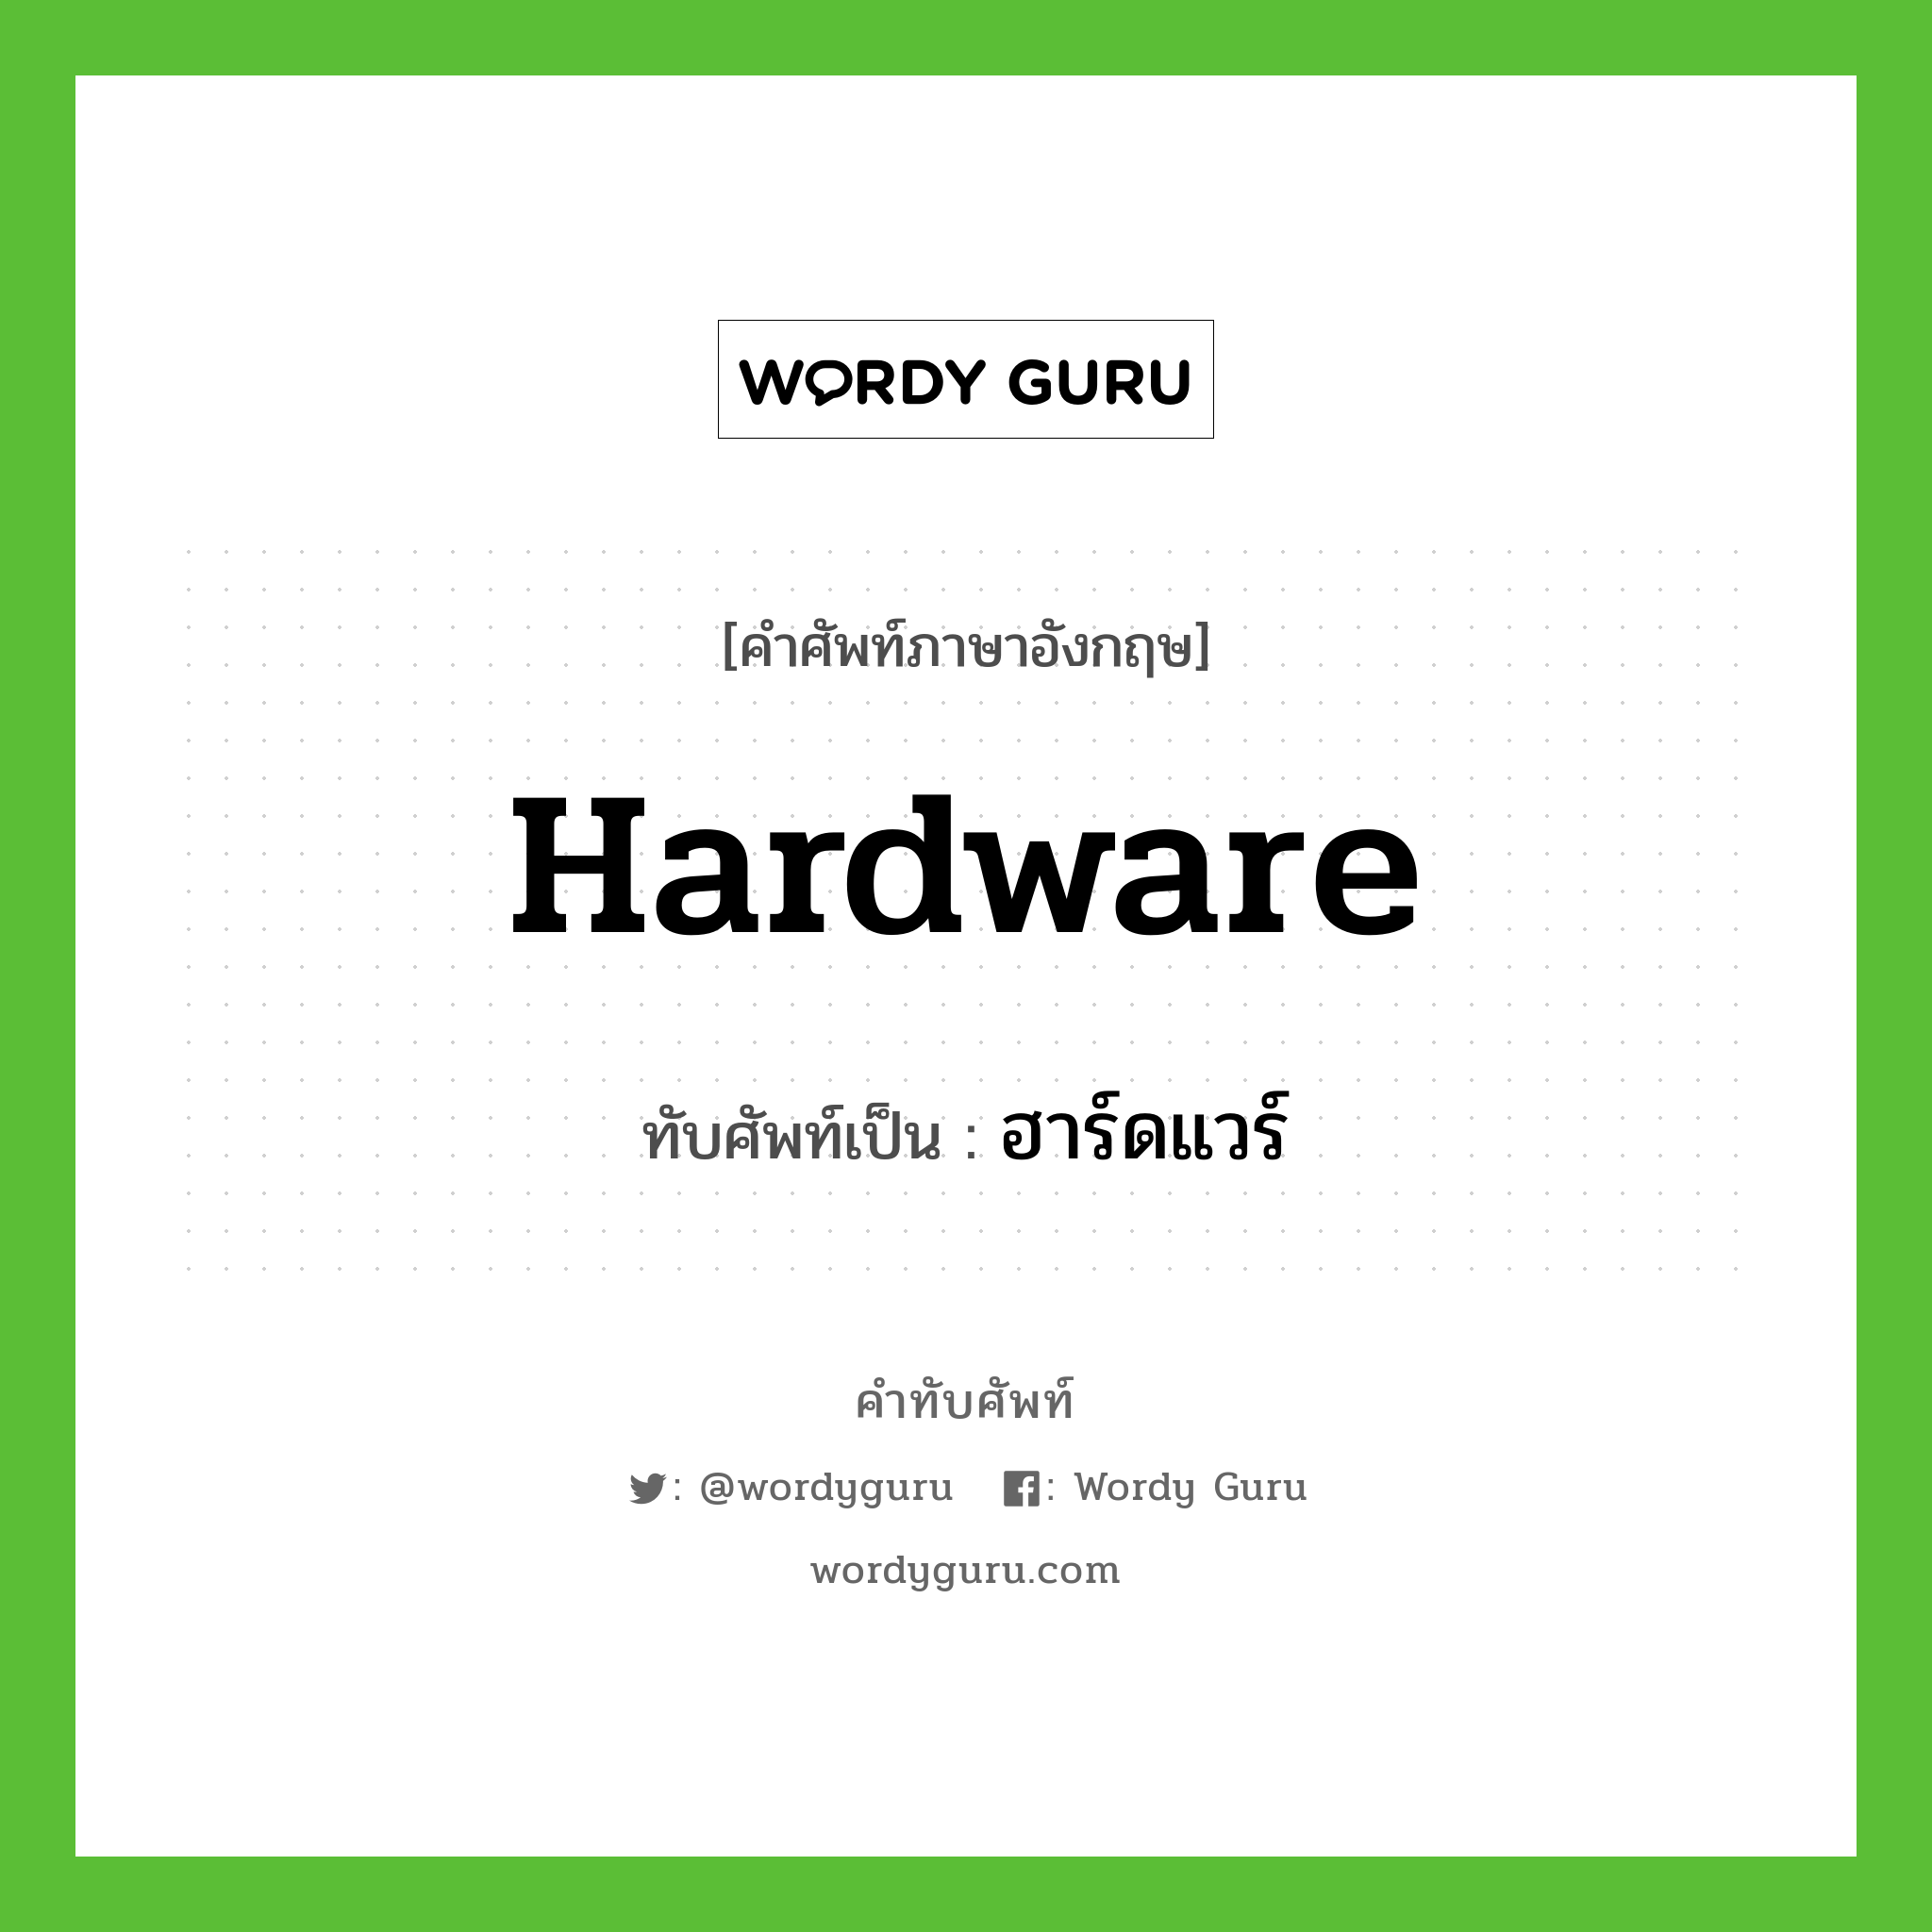 ฮาร์ดแวร์ เขียนอย่างไร?, คำศัพท์ภาษาอังกฤษ ฮาร์ดแวร์ ทับศัพท์เป็น hardware